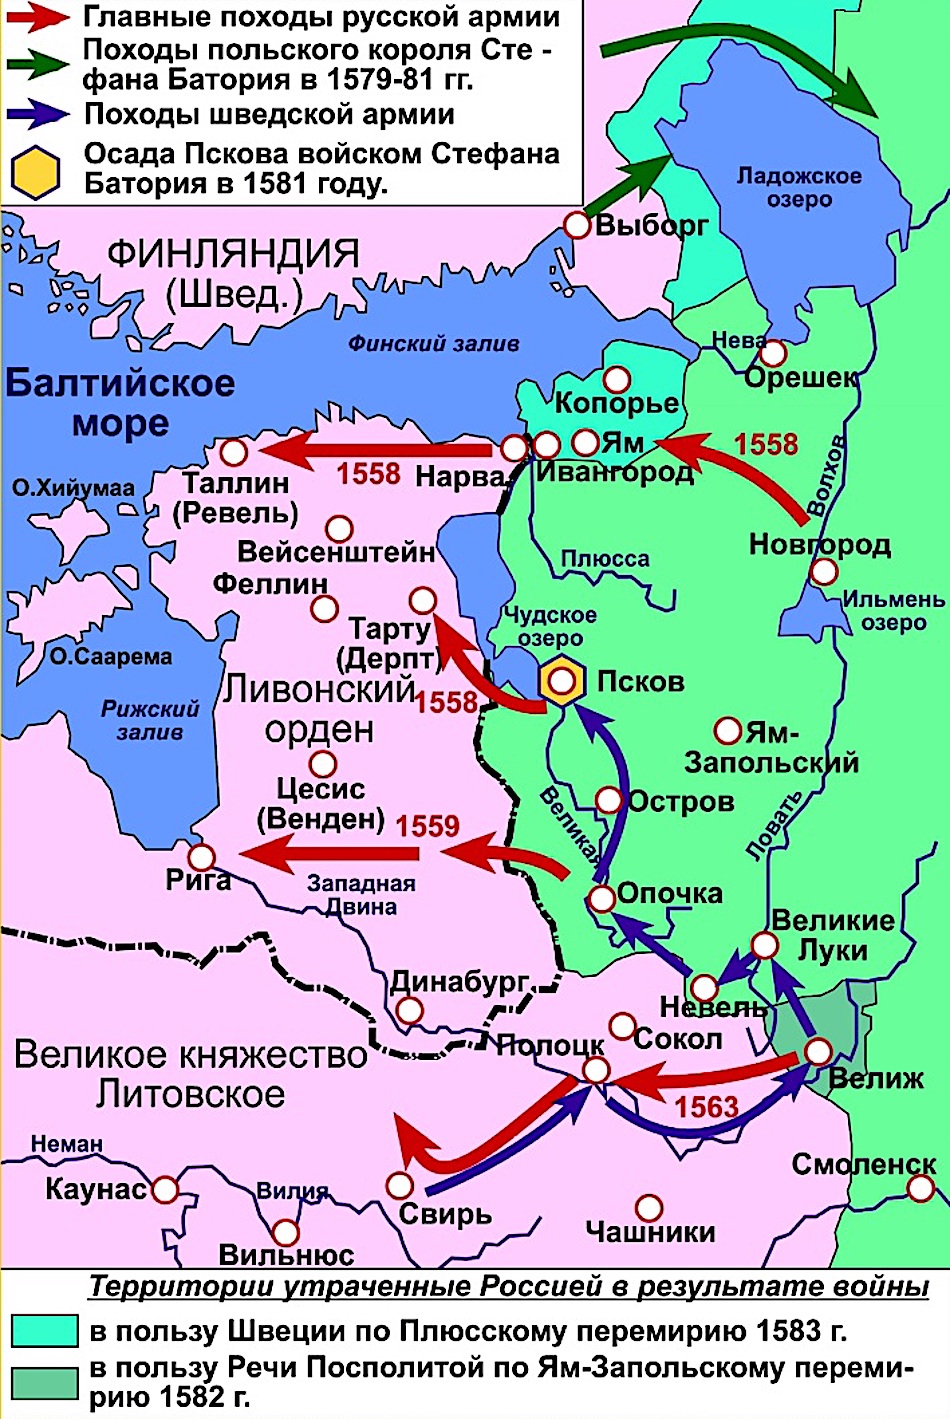 Общим врагом для россии и польши. Карта Ливонской войны 1558-1583.